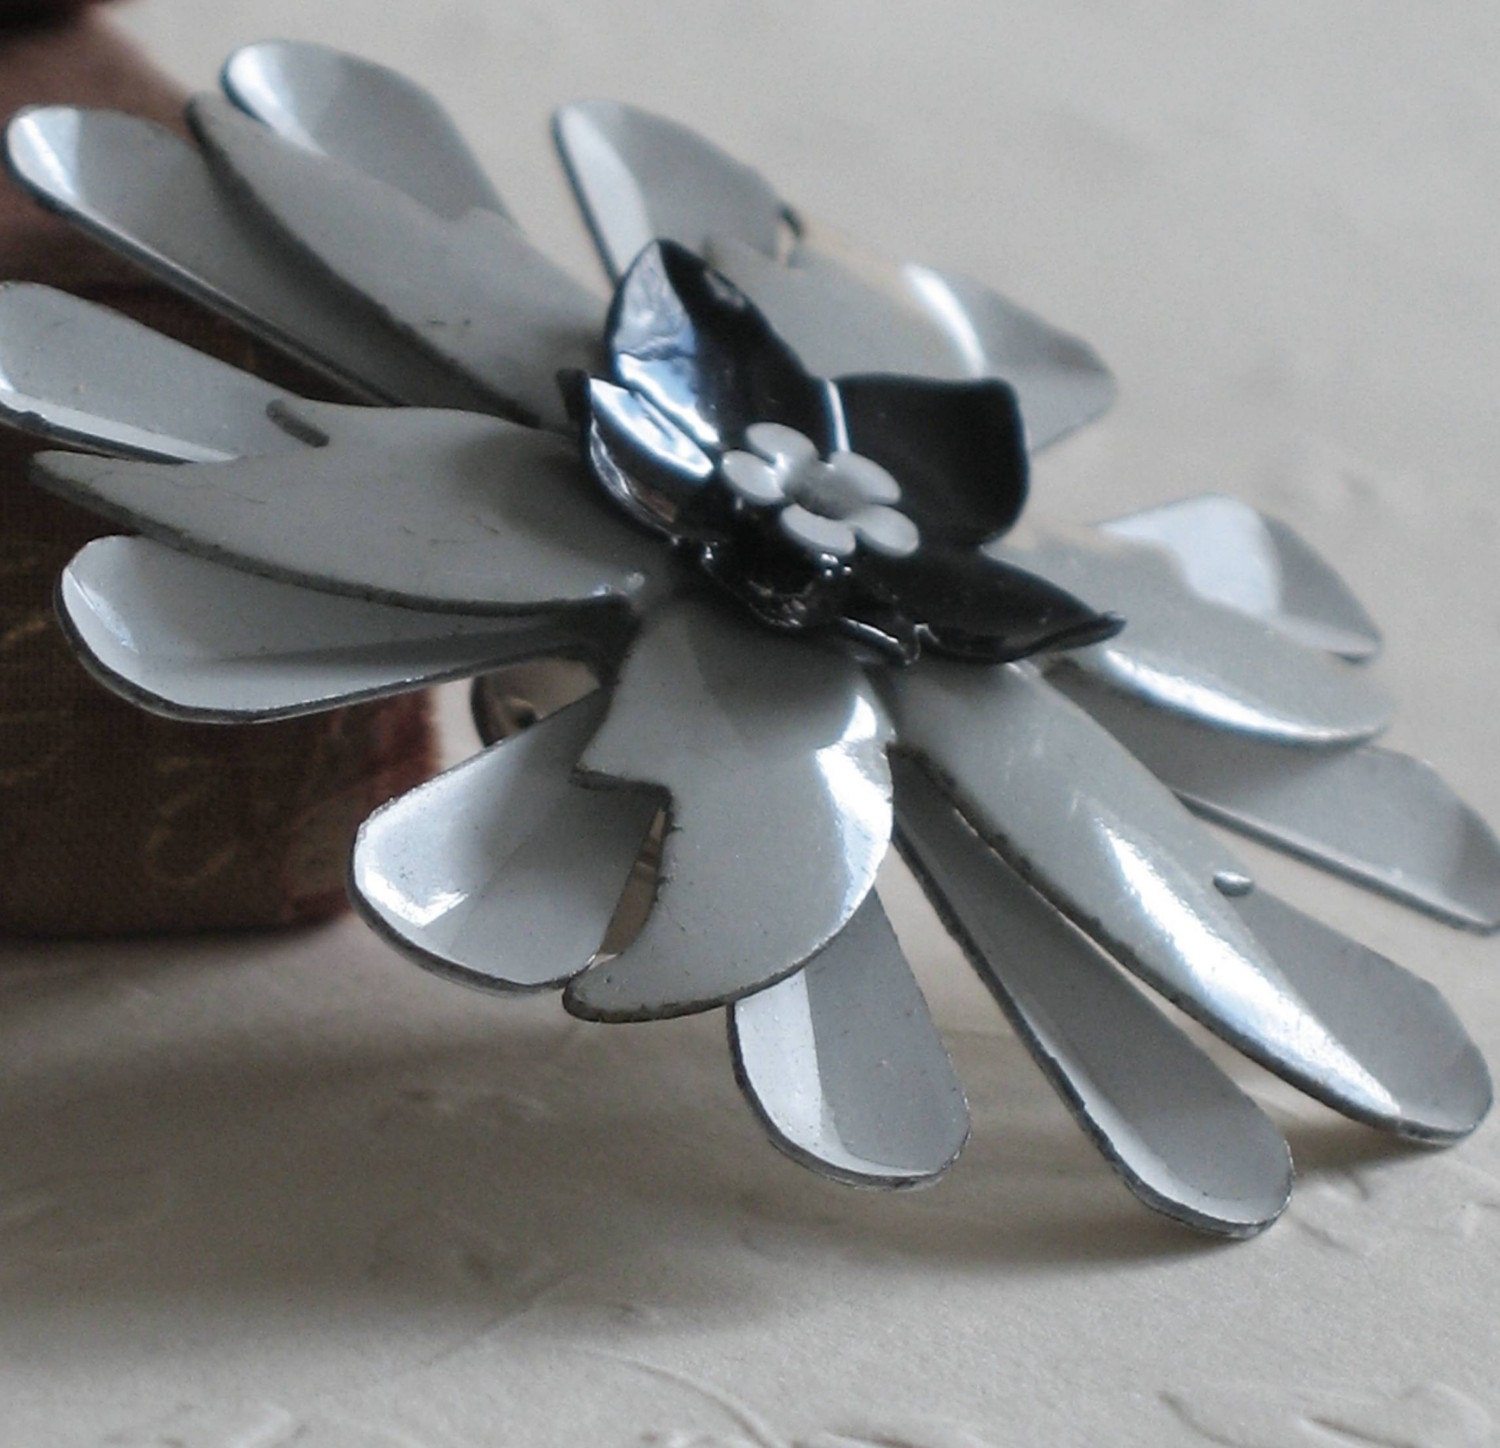 MonoChrome - A Metal Flower Lapel Pin